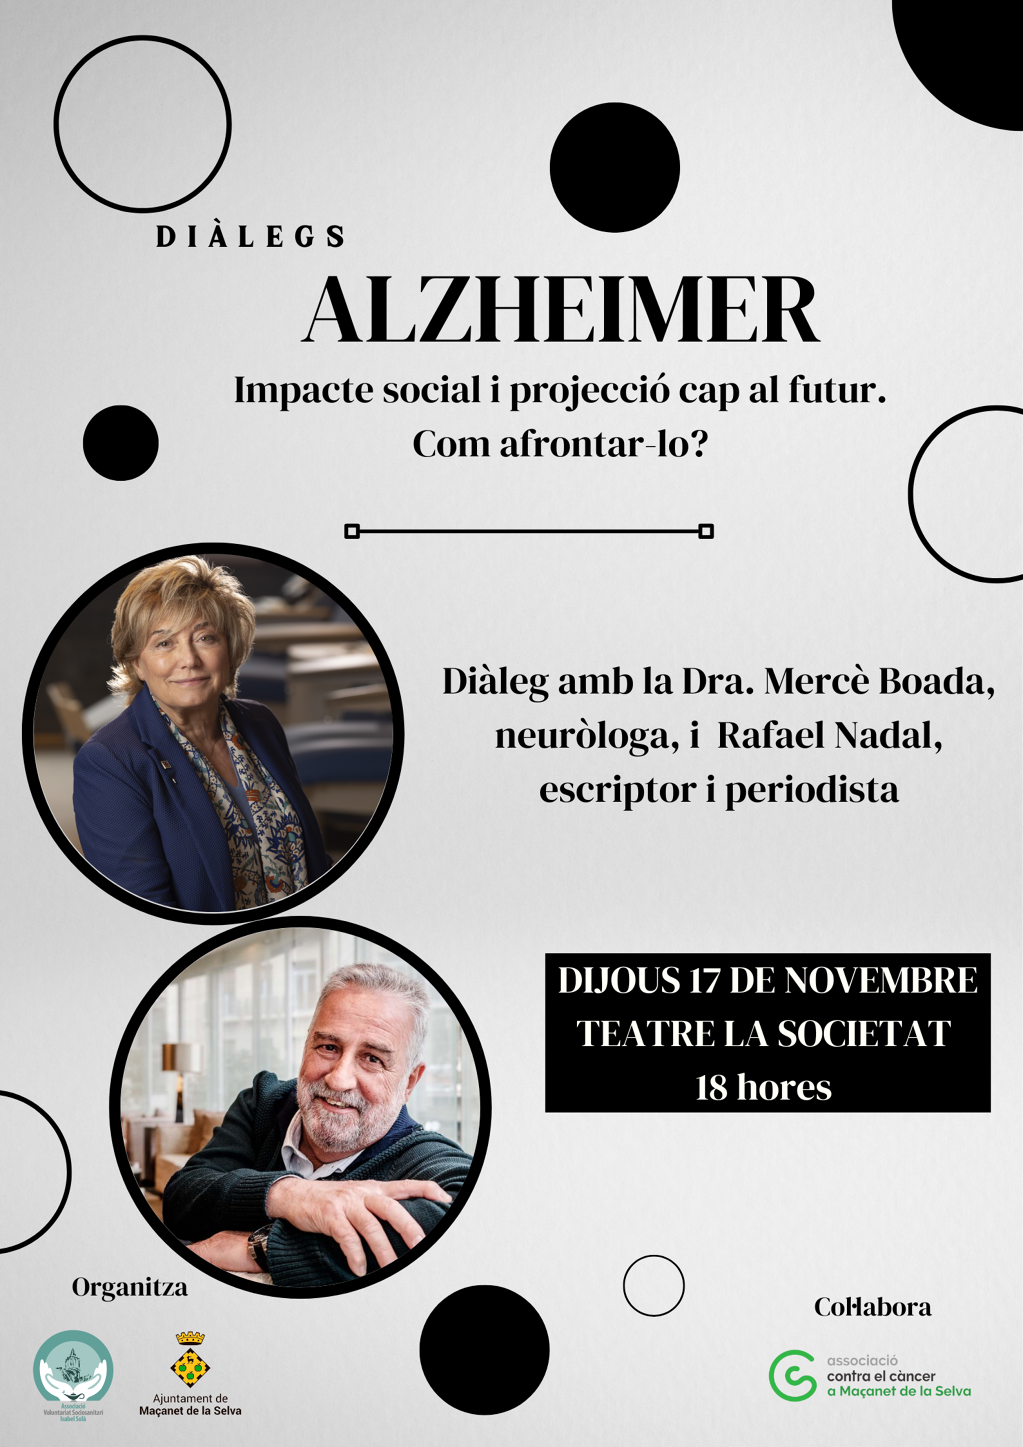 Diàlegs: Alzheimer, amb Rafel Nadal i la Dra. Mercè Boada (Associació Voluntariat Sociosanitari Isabel Solà) - e2e31-1.png